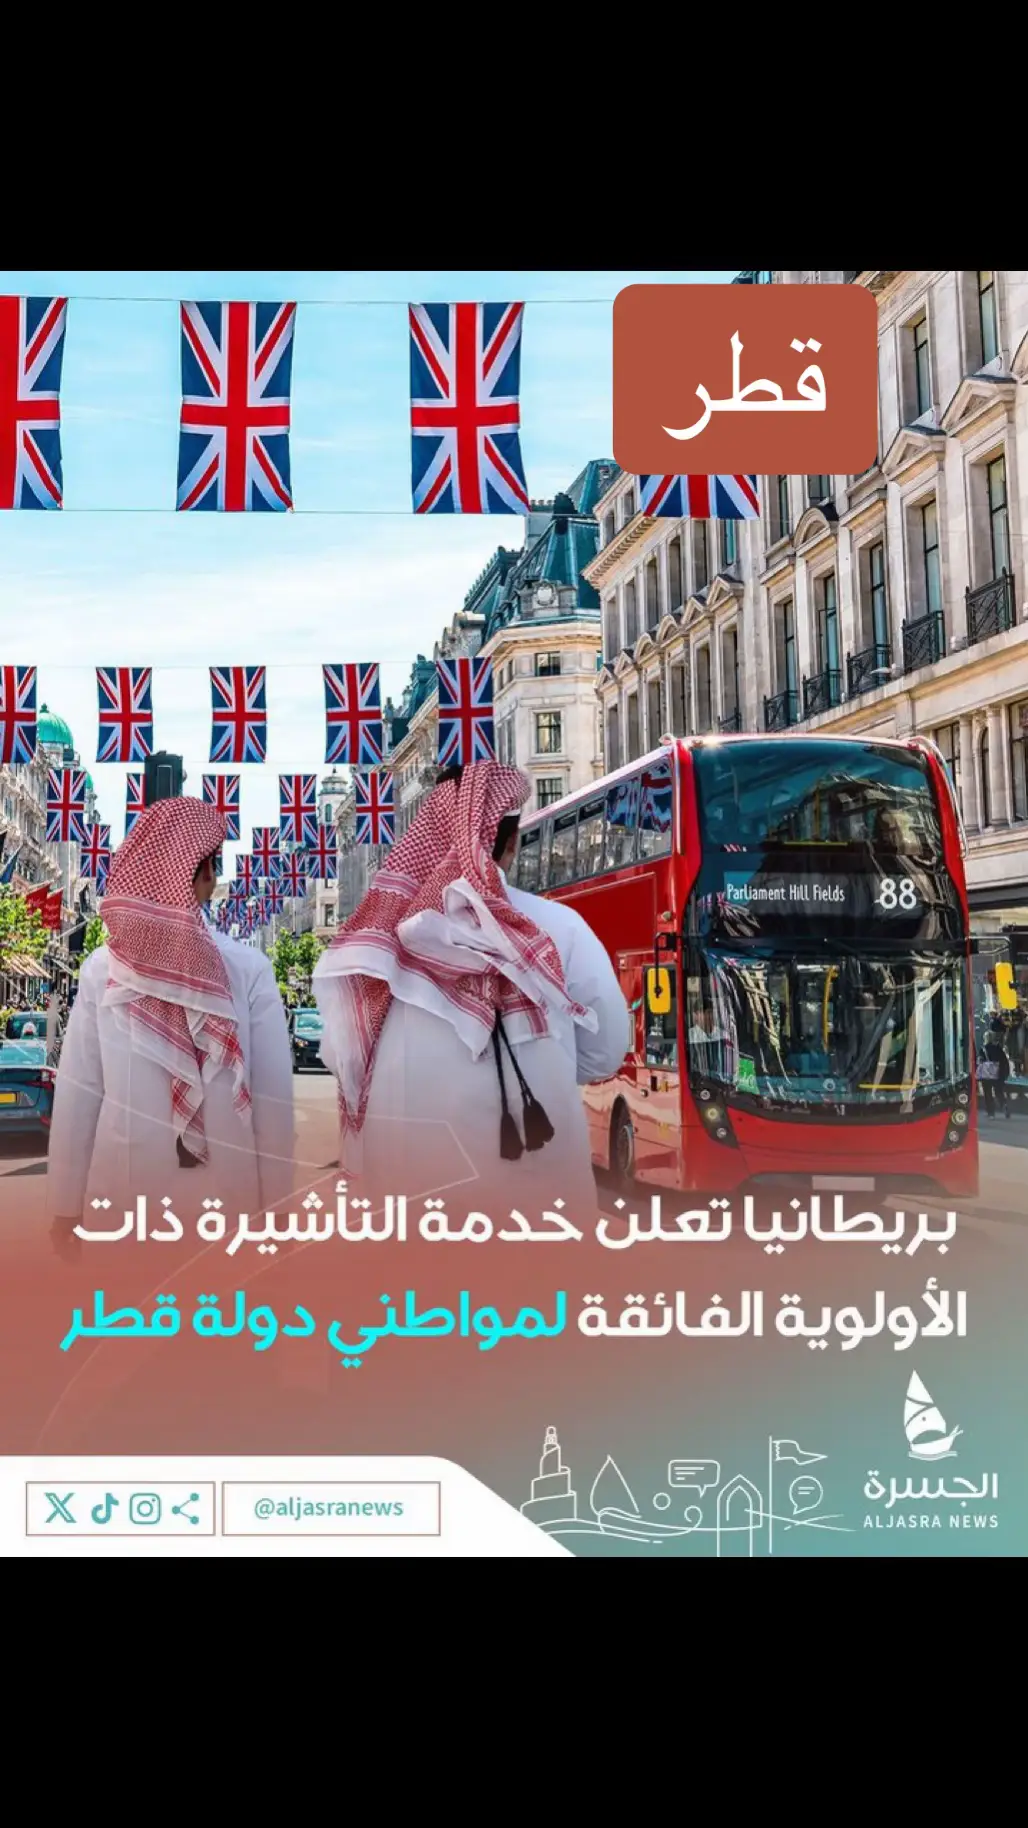 🇬🇧| سفارة ⁧‫#لندن‬⁩ لدى ⁧‫#الدوحة‬⁩ تعلن عن خدمة ⁧‫#التأشيرة‬⁩ ذات الأولوية الفائقة Super Priority Visa لمواطني دولة قطر  ‏👨🏻‍💻التقديم إلكتروني ‏🗓️النتيحة في غضون يومين  ‏| ⁦‪@ukinqatar‬⁩ - ⁦‪@duncanhilluk‬⁩